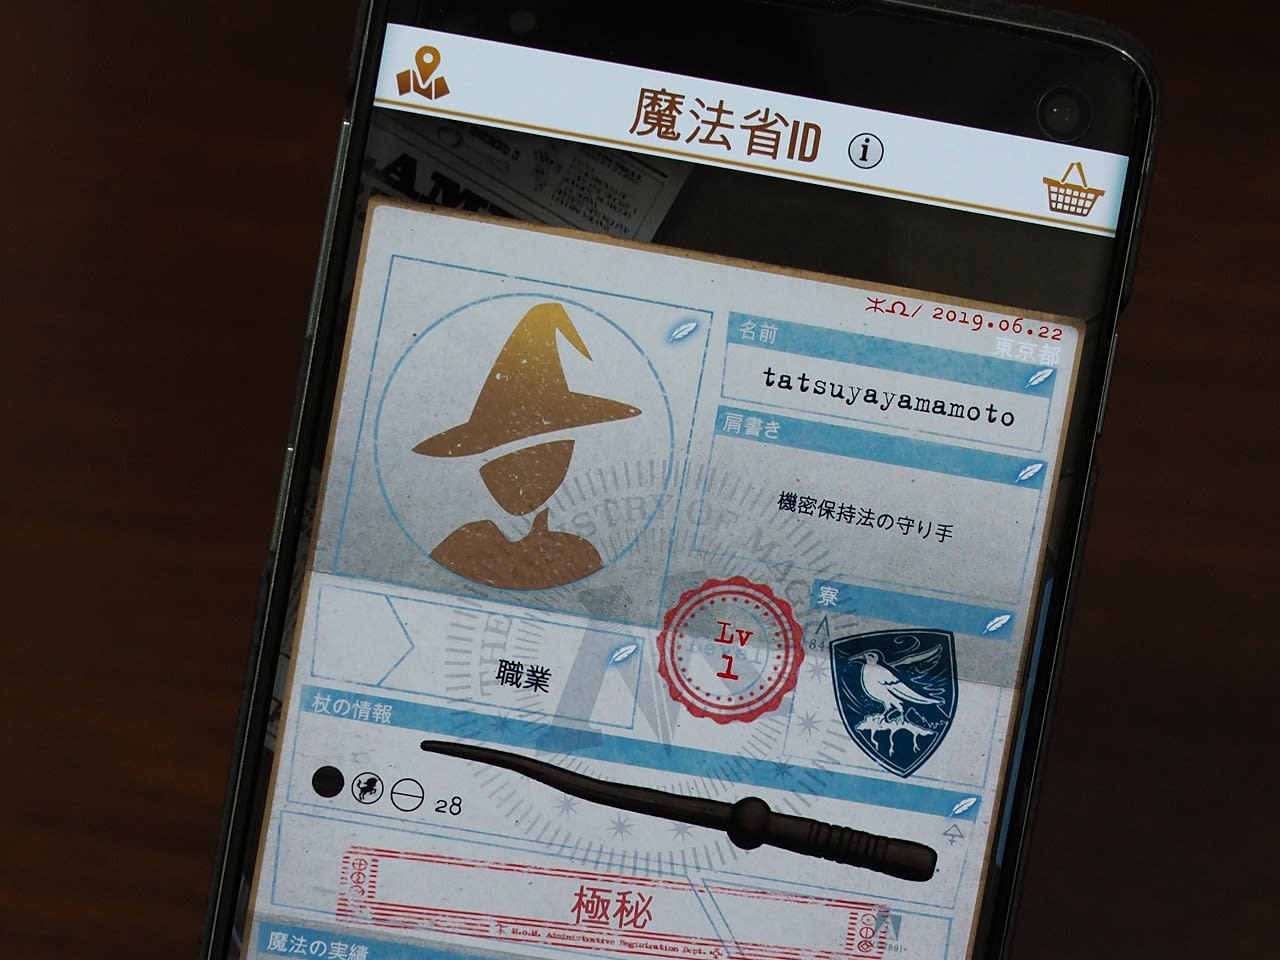 日本でも配信間近 ハリポタ 魔法同盟 で変更不可な設定とは 魔法省idとコードネームについて Engadget 日本版